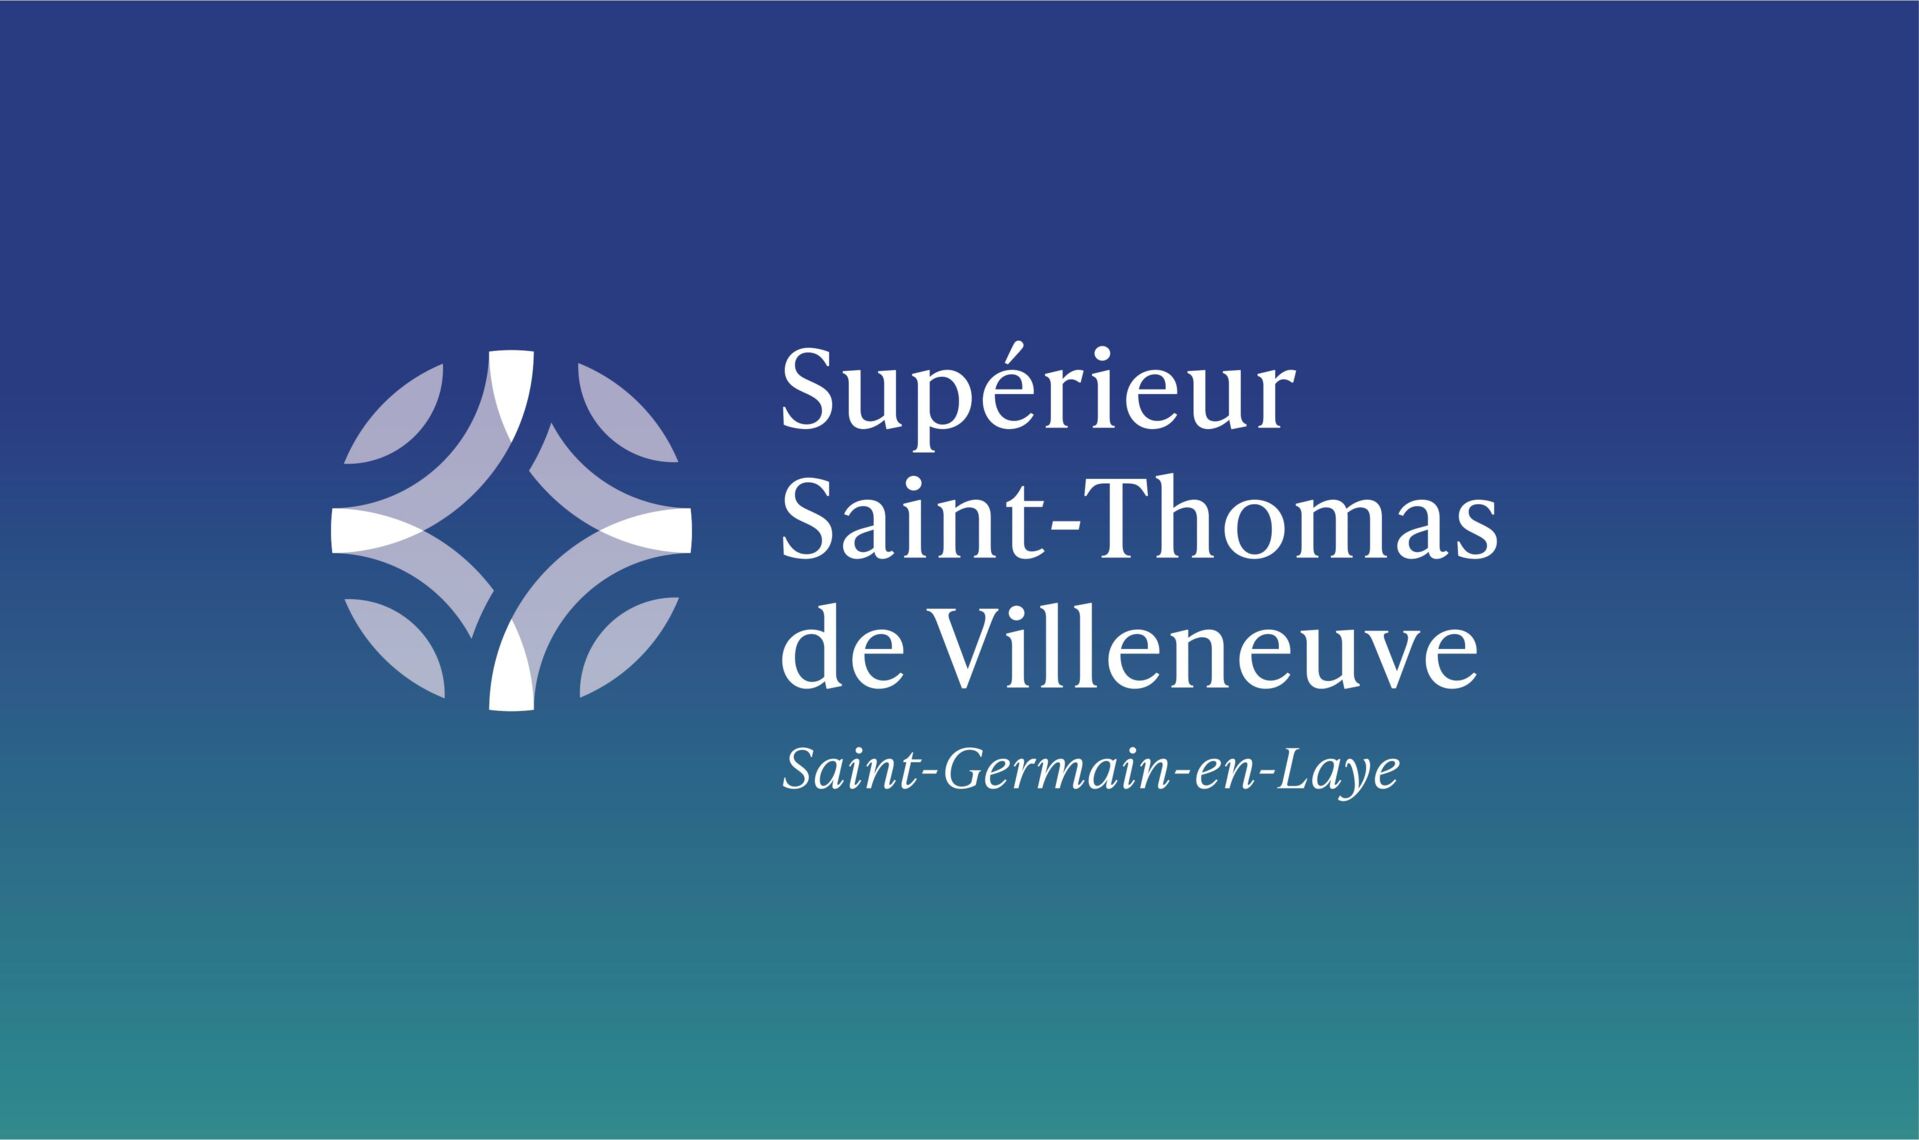 Supérieur Saint-Thomas de Villeneuve